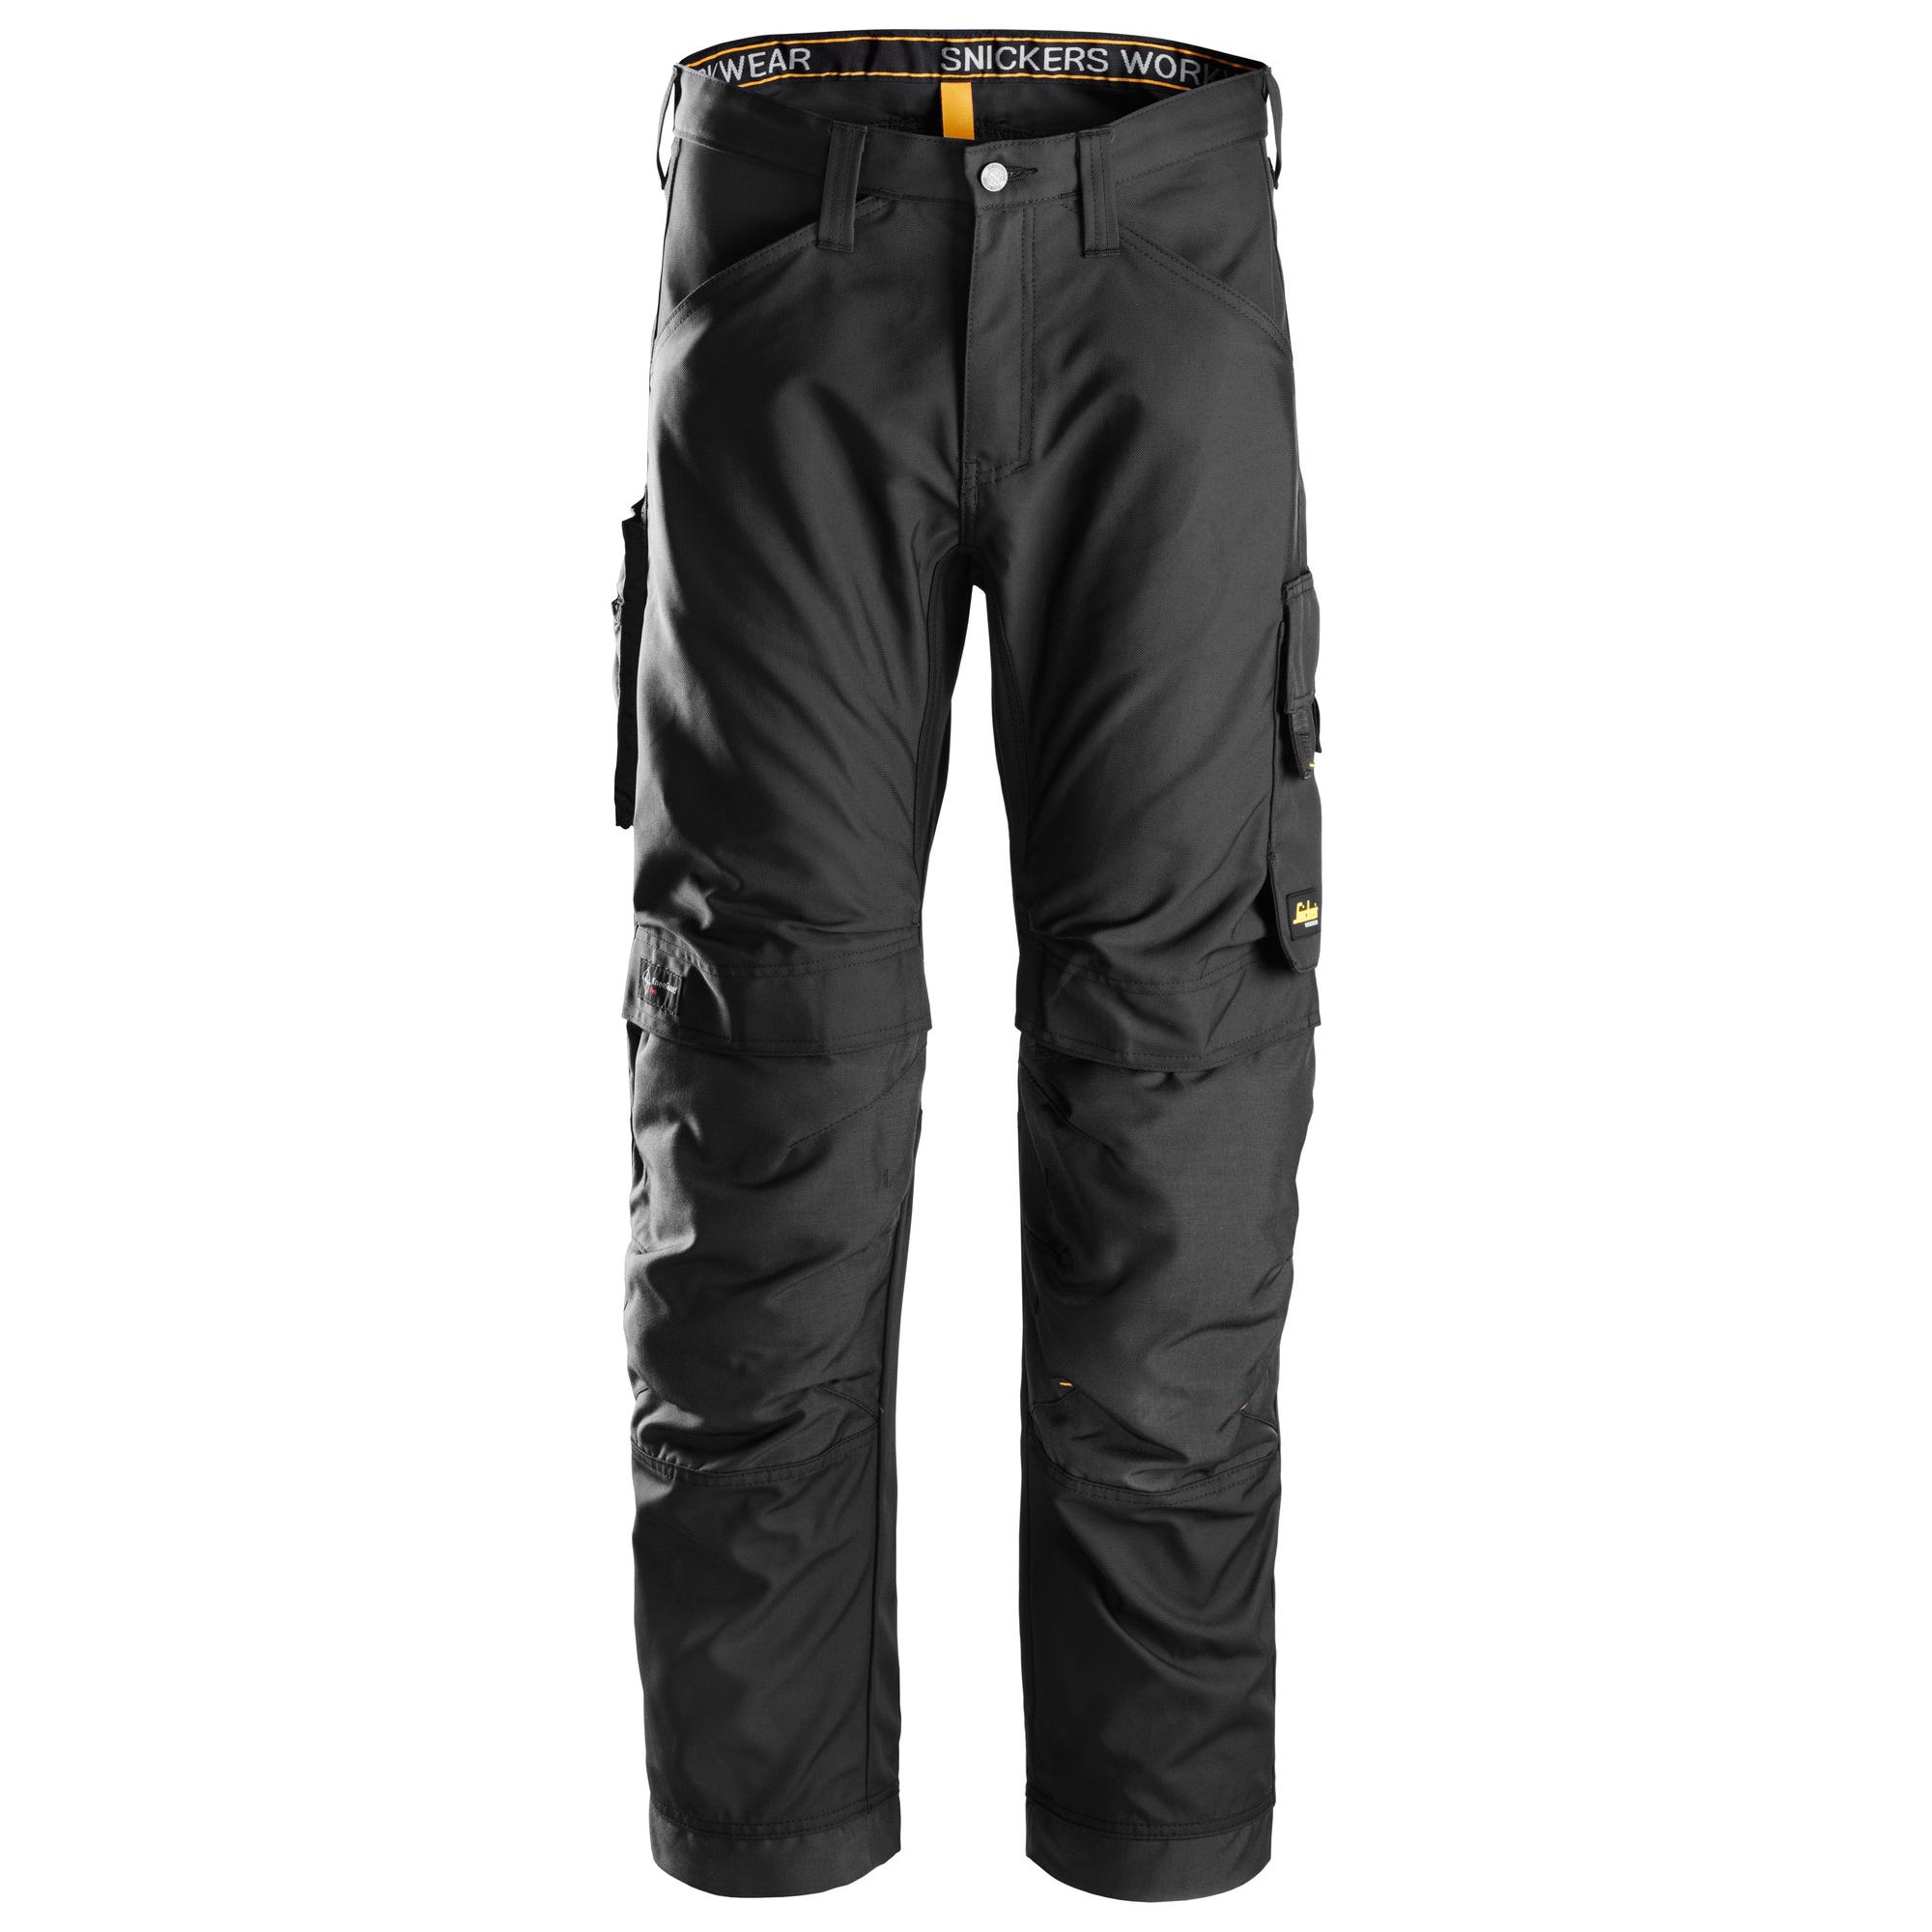 Pantalon de travail noir T.50 - SNICKERS 3